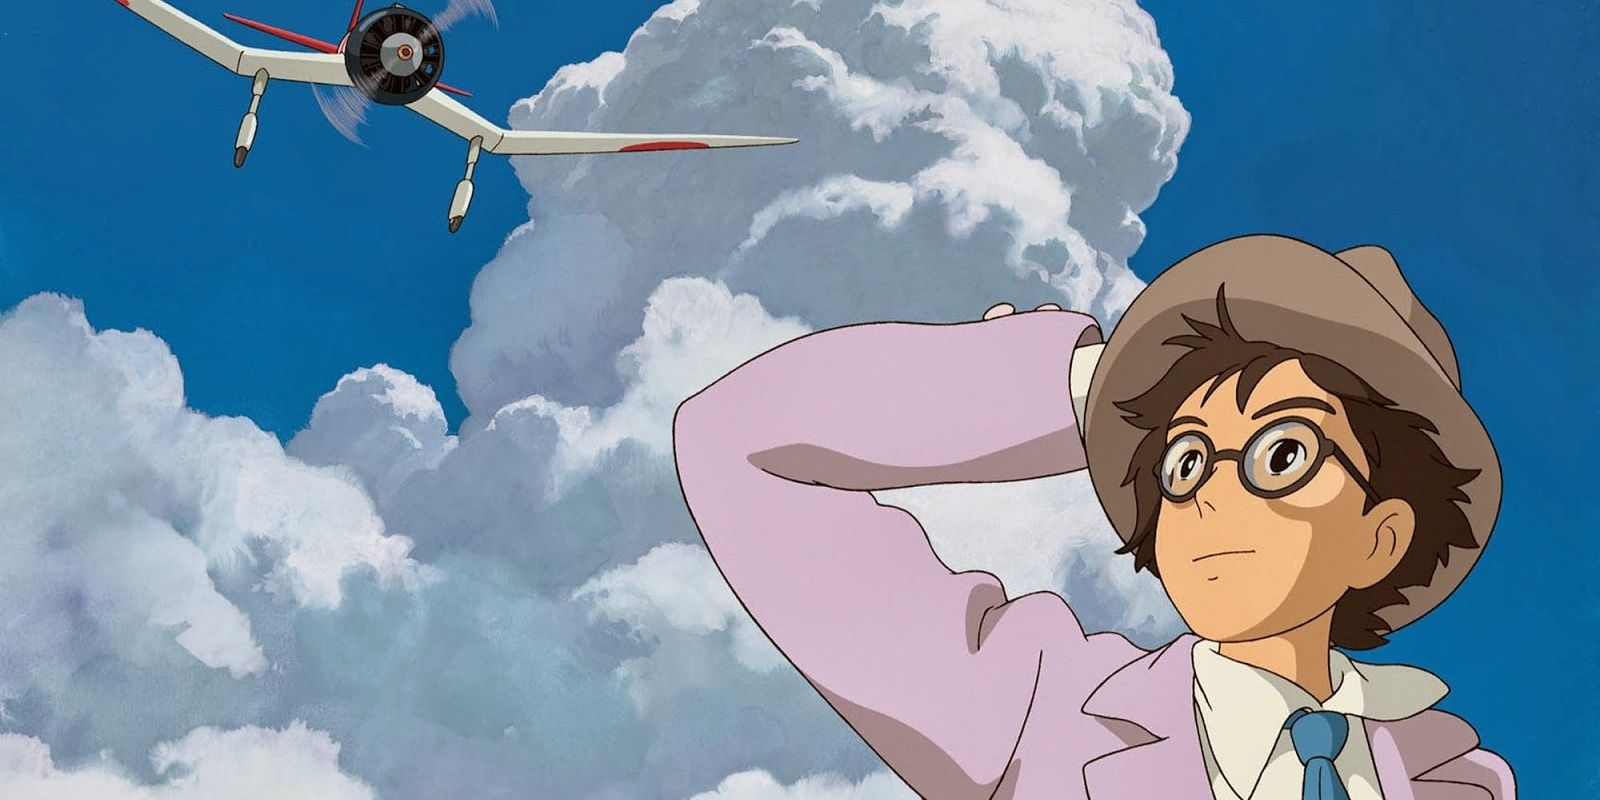 Studio Ghiblis 10 Best Protagonists Ranked